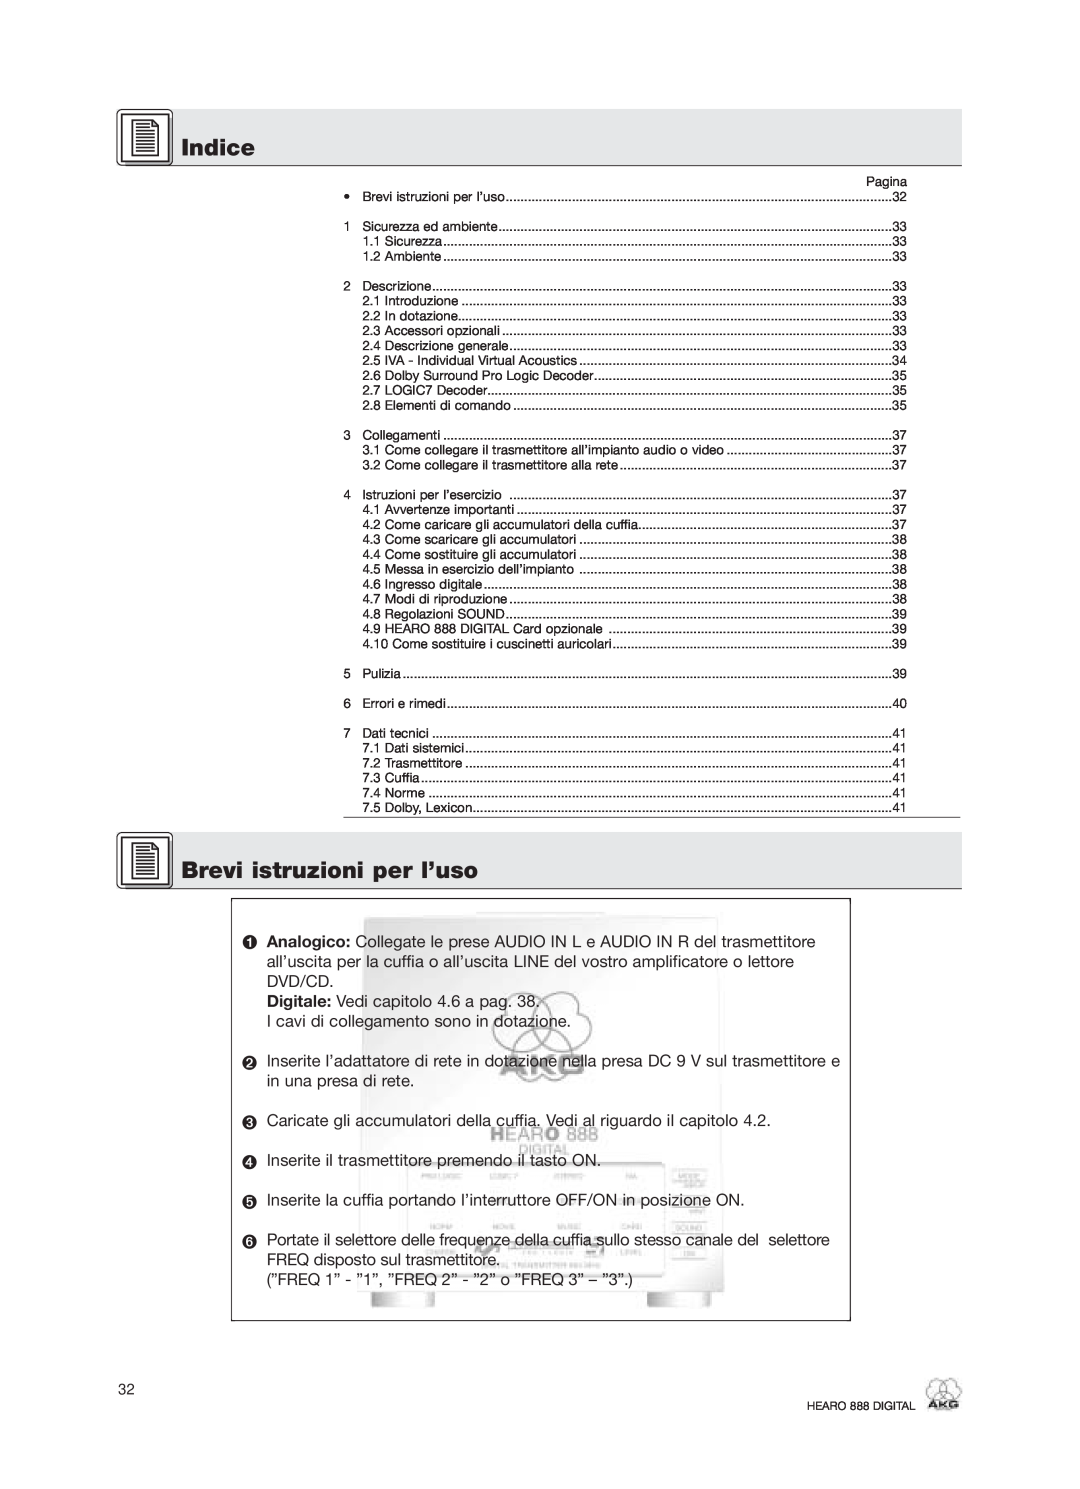 AKG Acoustics HEARO 888 specifications Indice, Brevi istruzioni per l’uso 